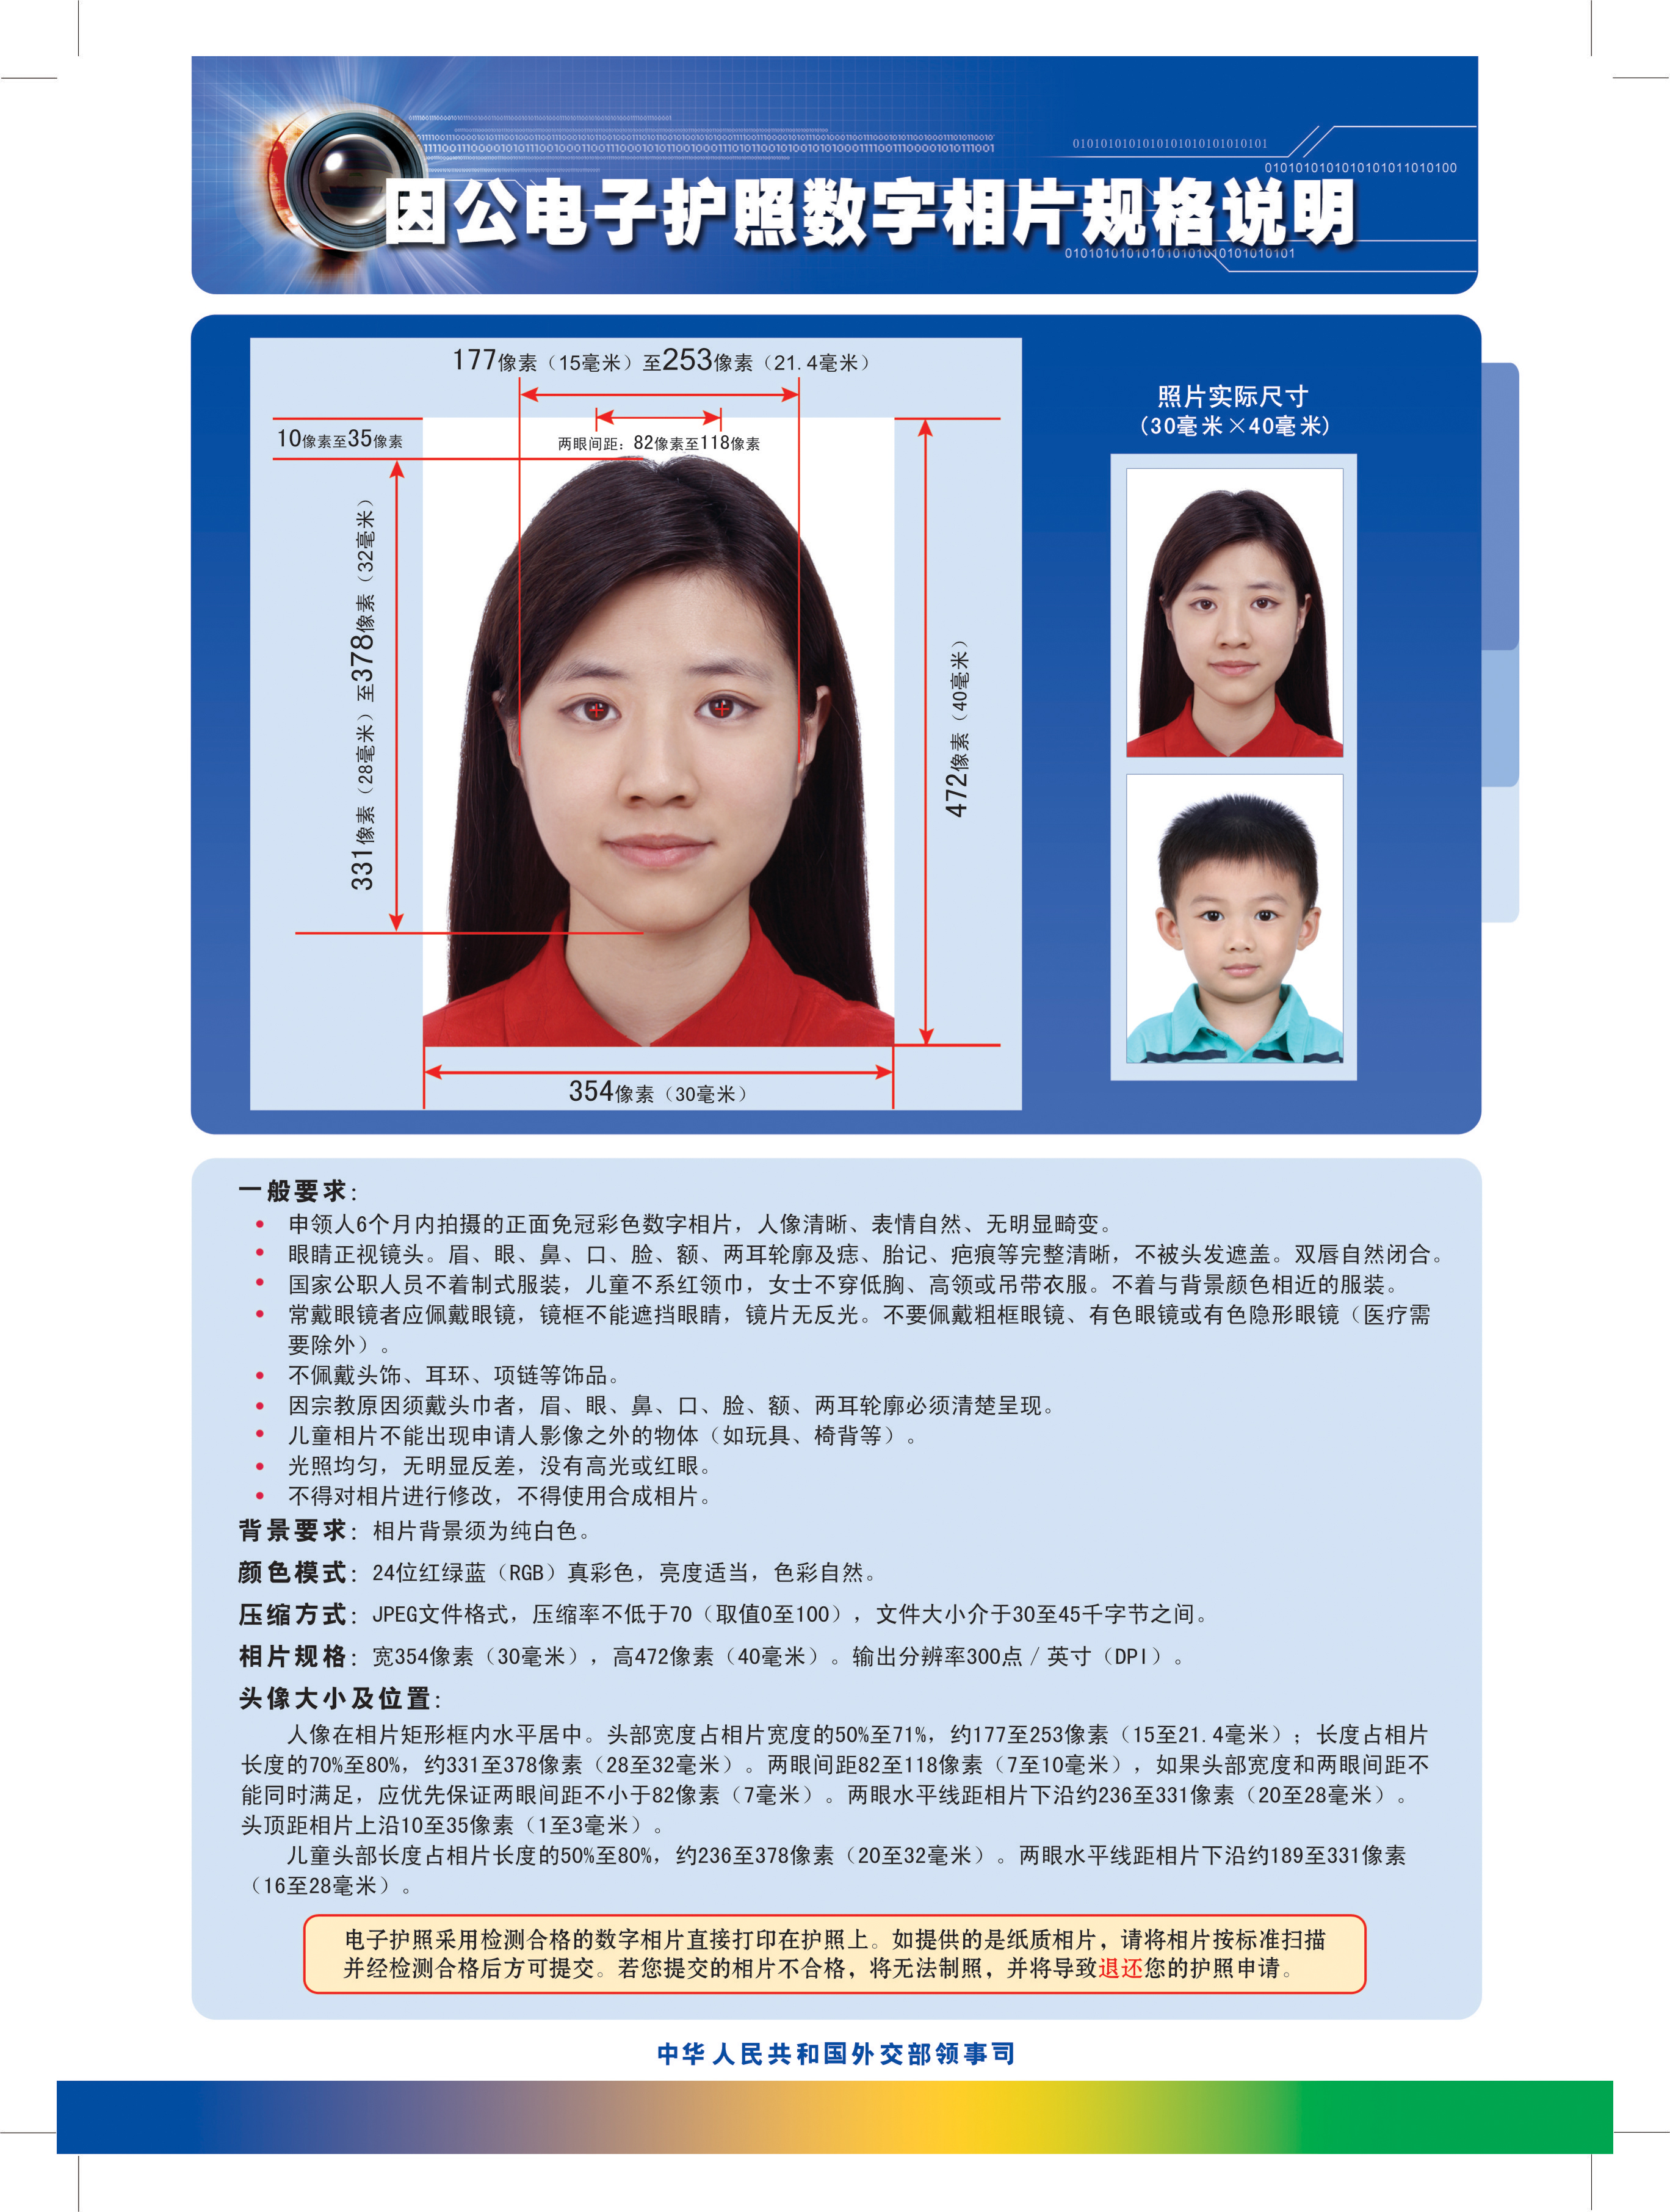 中国因公电子护照数字相片规格说明